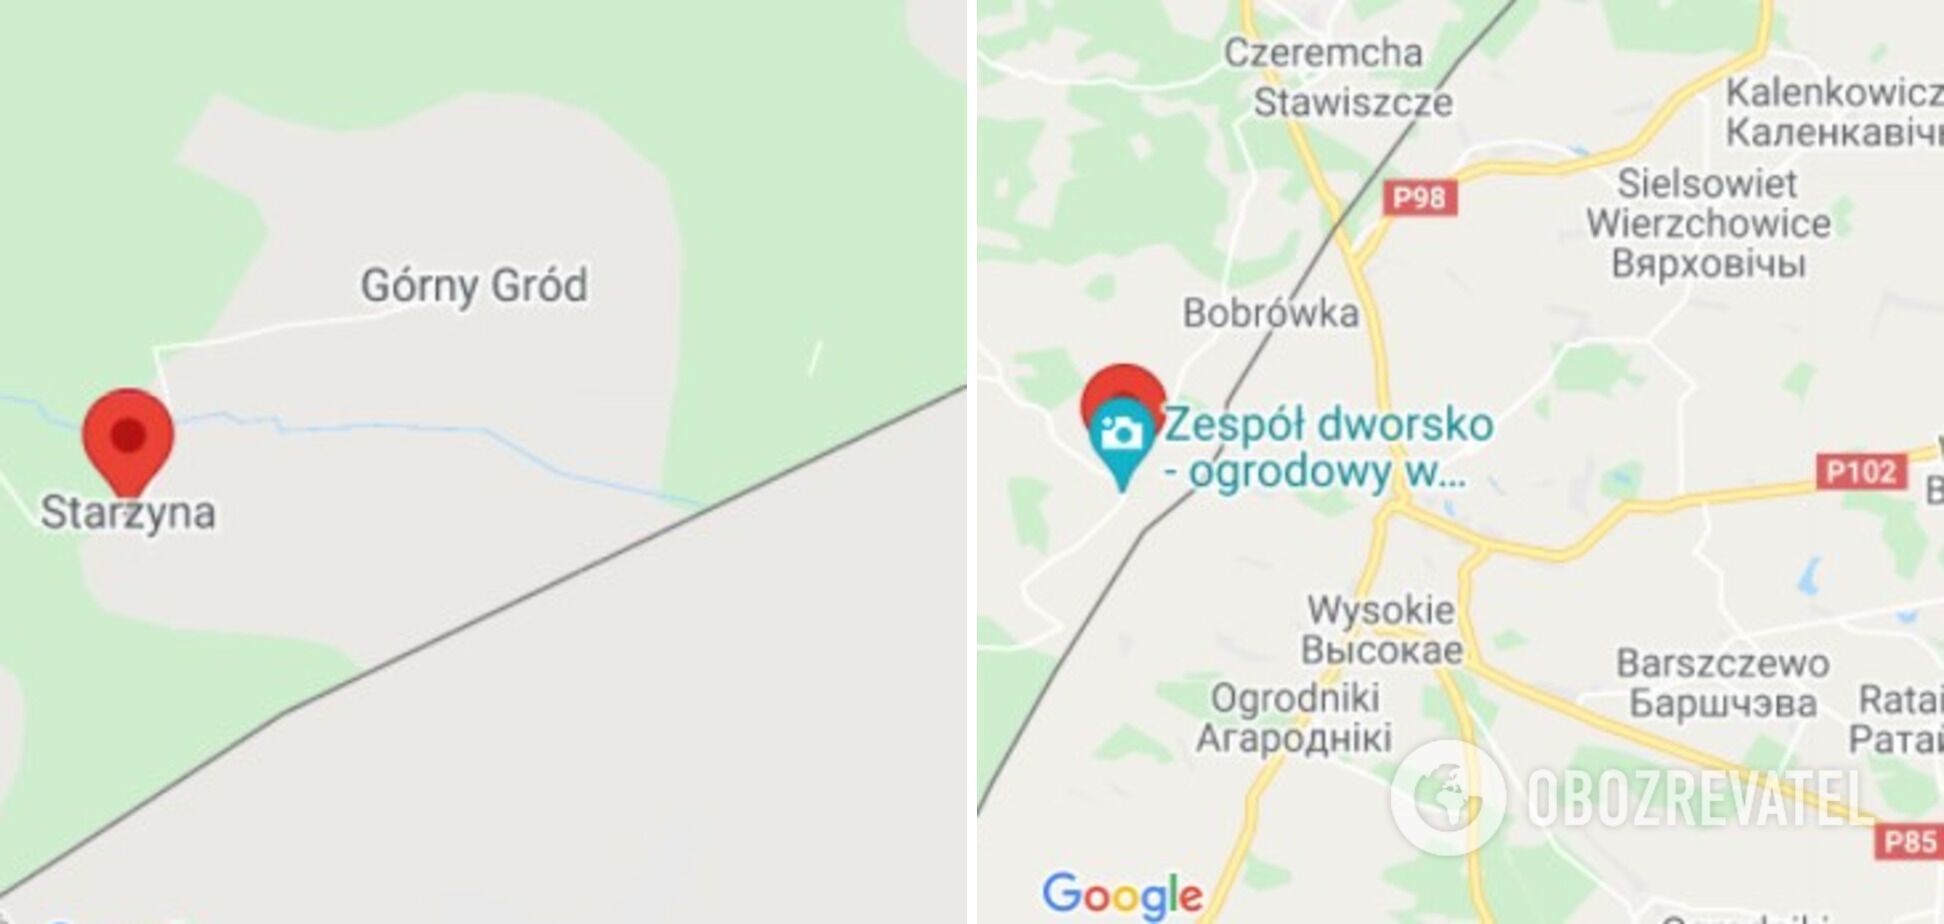 Десятки беженцев прорвались на польскую сторону в районе села Старжины и города Клюковичи